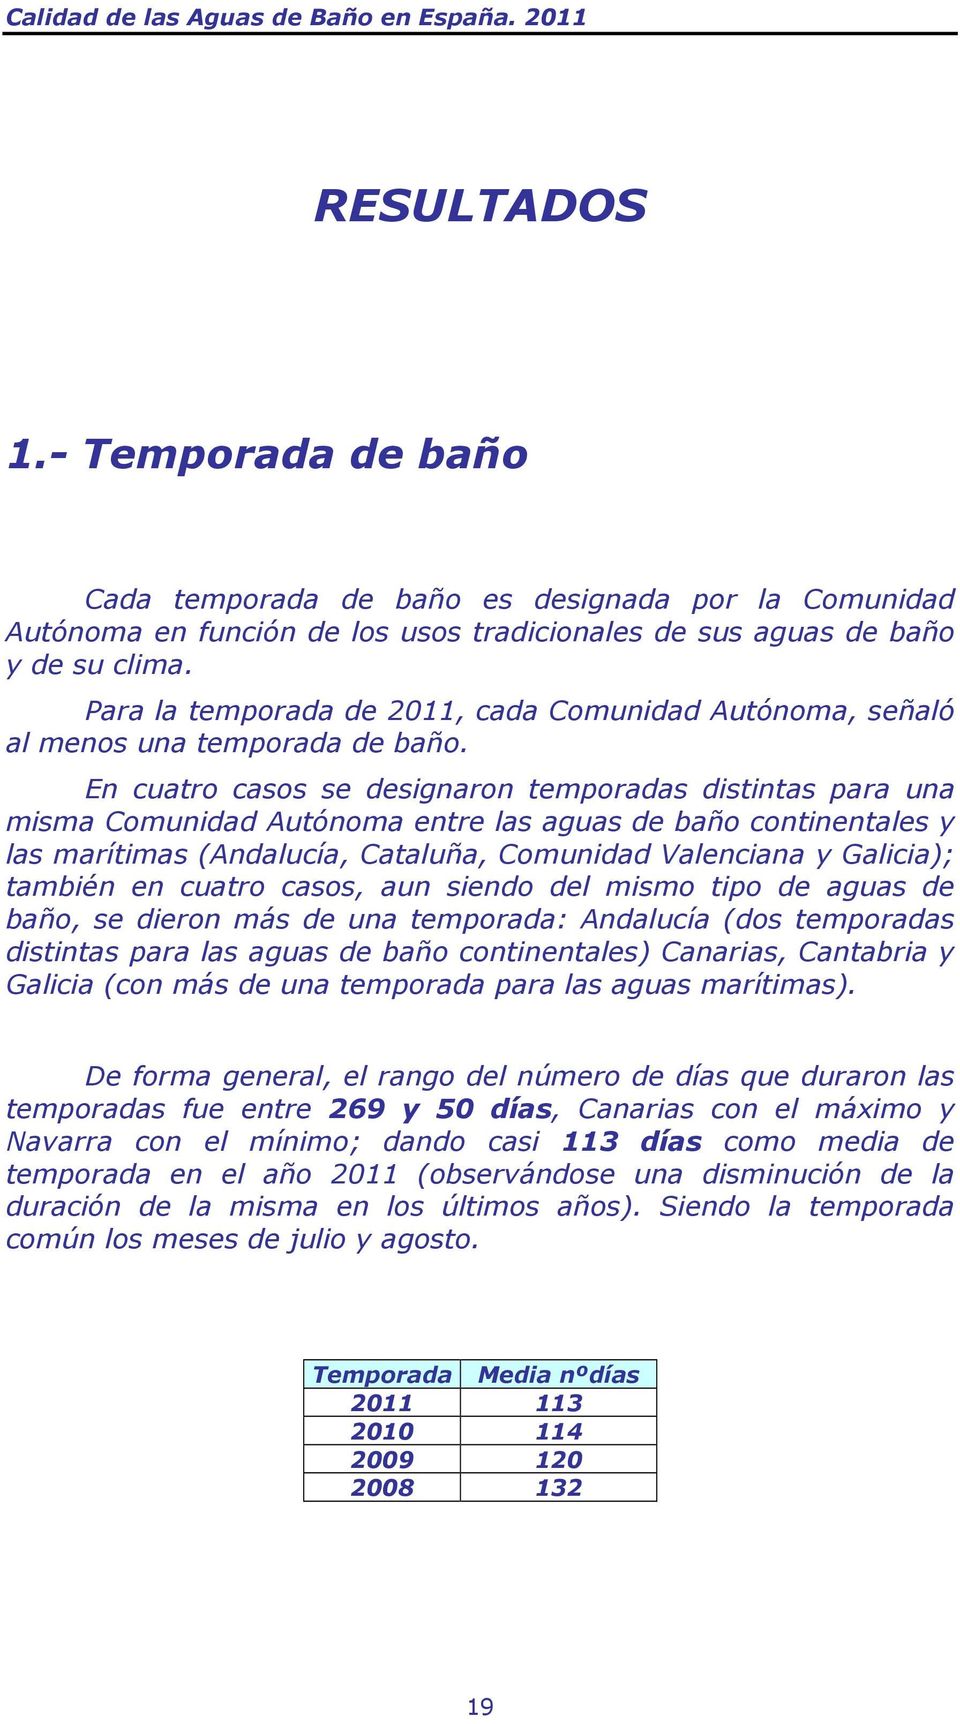 En cuatro casos se designaron temporadas distintas para una misma Comunidad Autónoma entre las aguas de baño continentales y las marítimas (Andalucía, Cataluña, Comunidad Valenciana y Galicia);